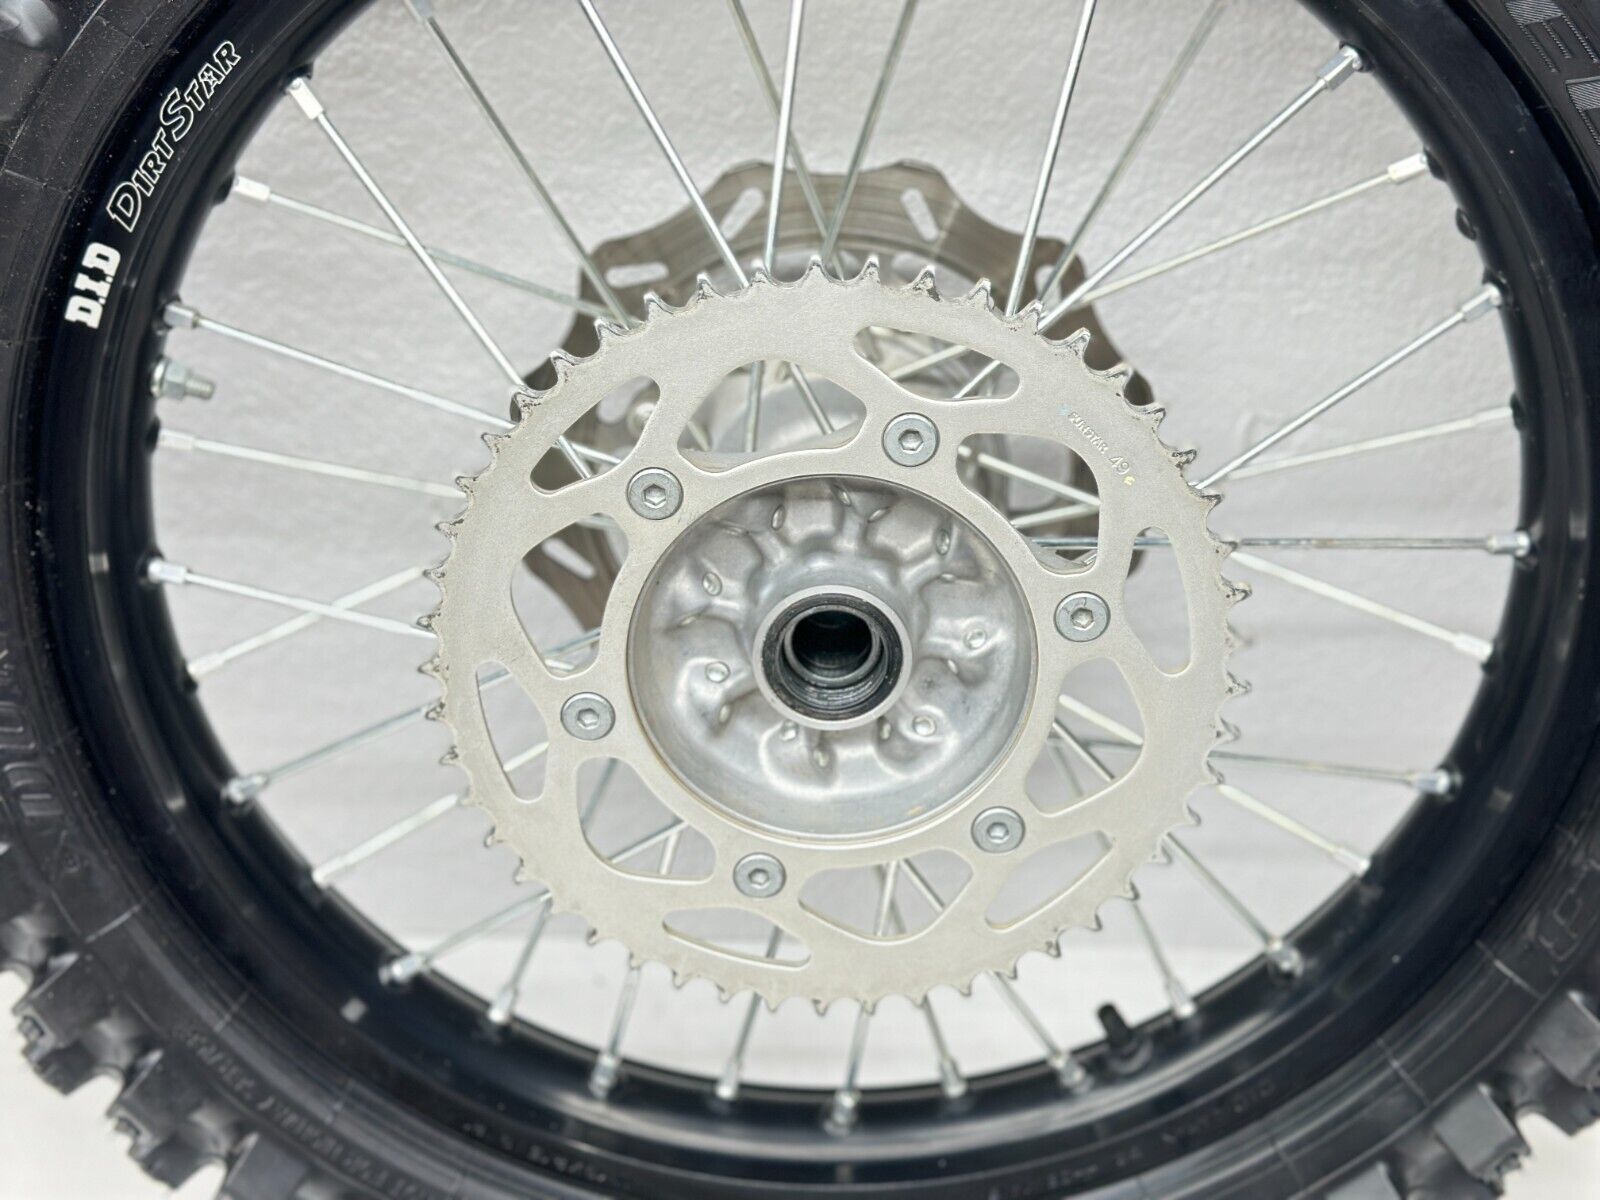 2022 Honda CRF450R DID Dirtstar Wheel Set Assembly Rim Rotor Sprocket Rear Front